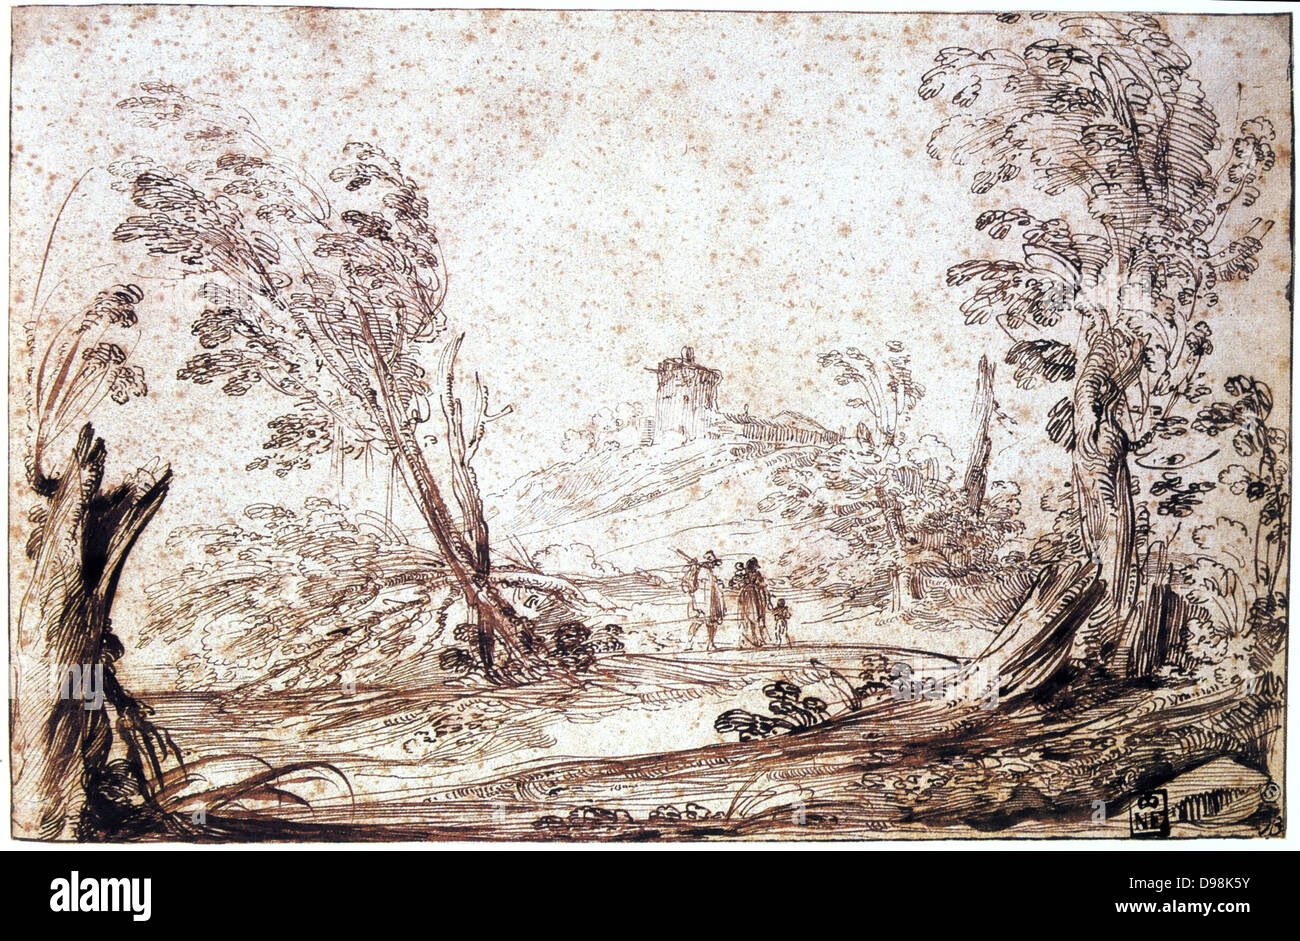 Giovanni Francesco Barbieri, genannt Il Guerincino (1591-1666) italienischer Barock Maler. Landschaft mit Wind Bäume und Familie wandern in die Ferne. Zeichnung in Stift und brauner Tinte und Waschen. Stockfoto